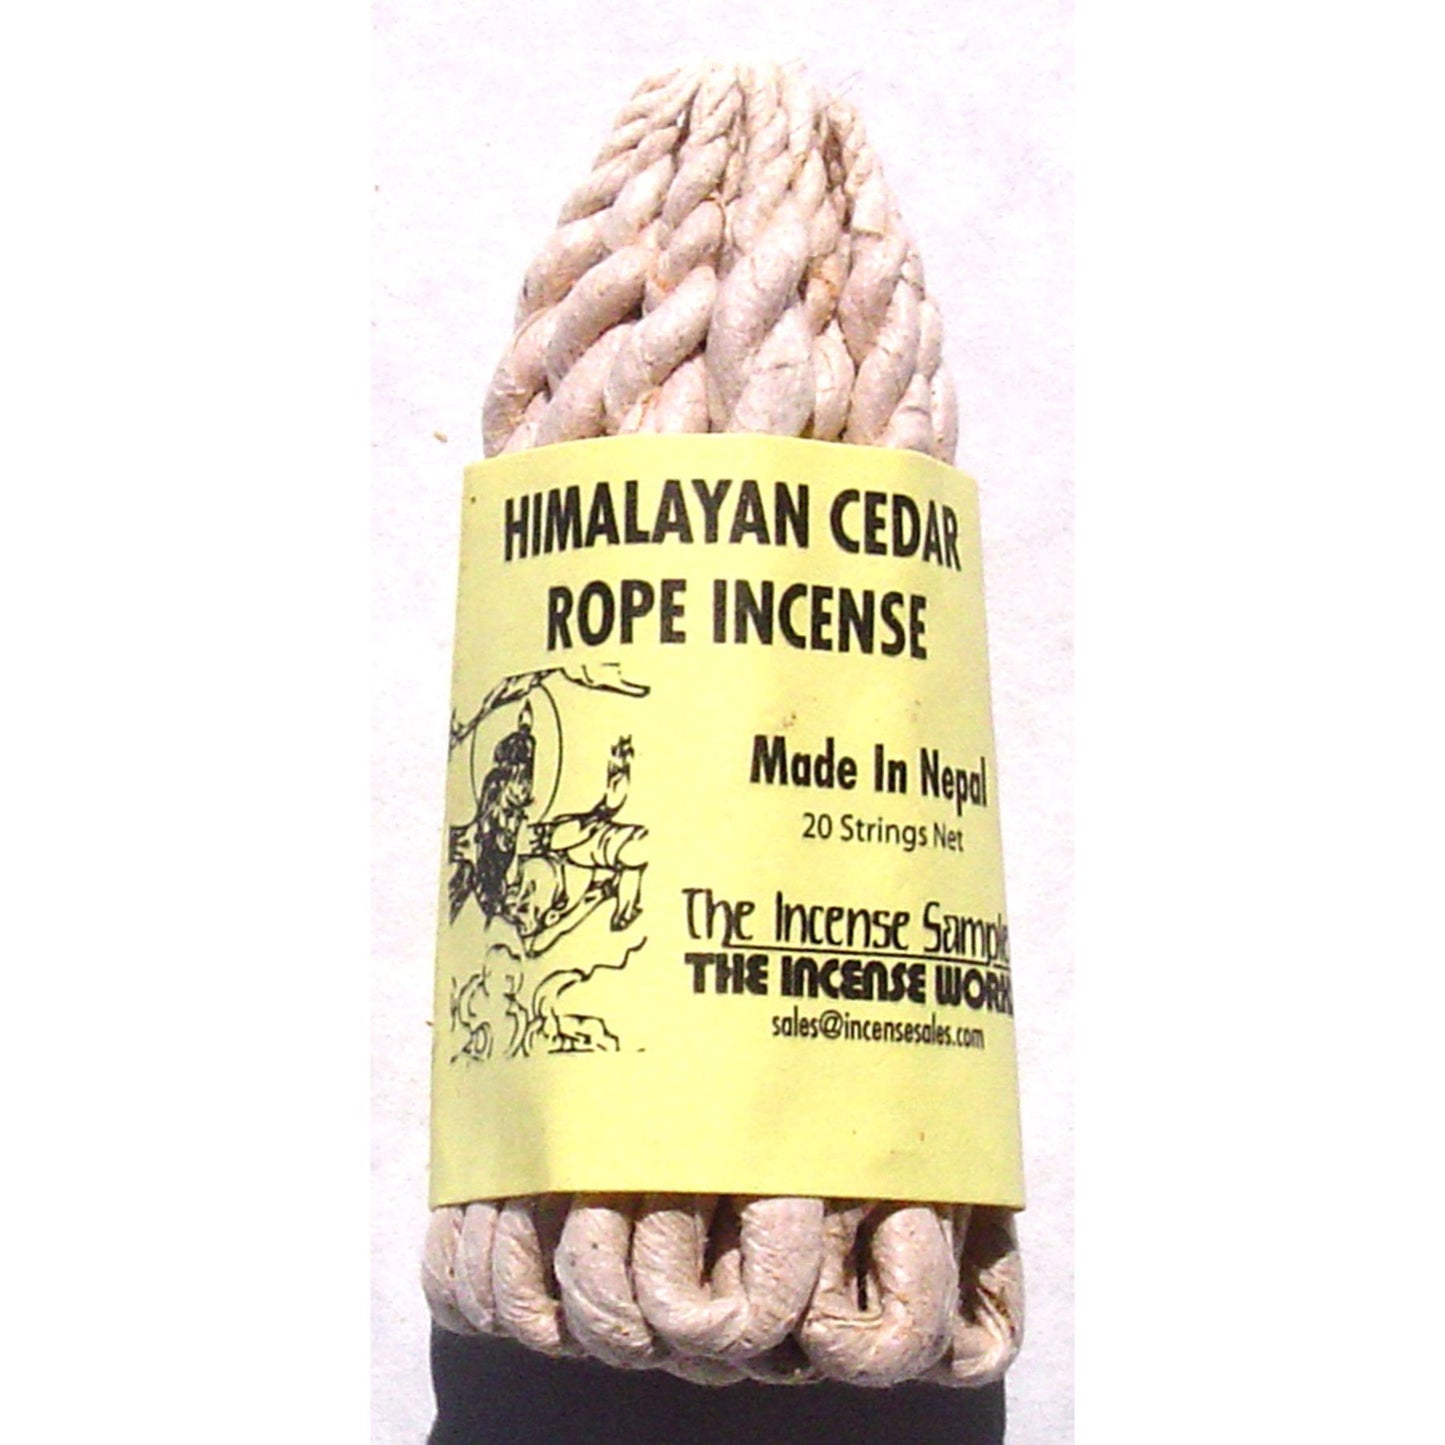 Tibetan - Himalayan Cedar Rope Incense